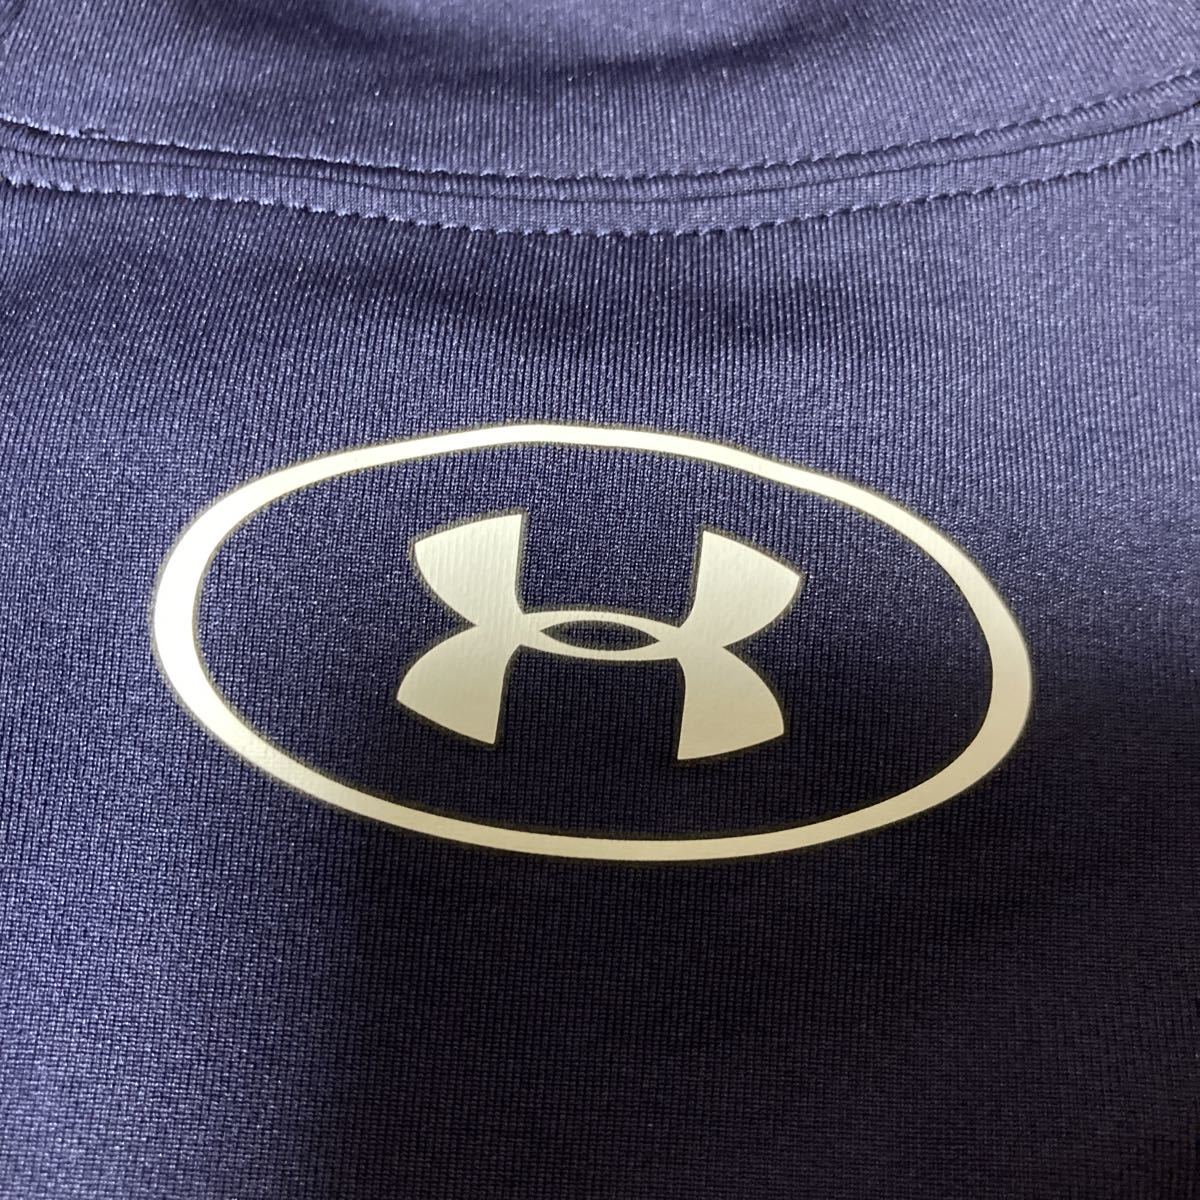 UNDER ARMOUR 半袖シャツ MD 紺色 ヒートギア コンプレッション s/s ショートスリーブ インナー M HG Tシャツ モック ハイネック MDNの画像5